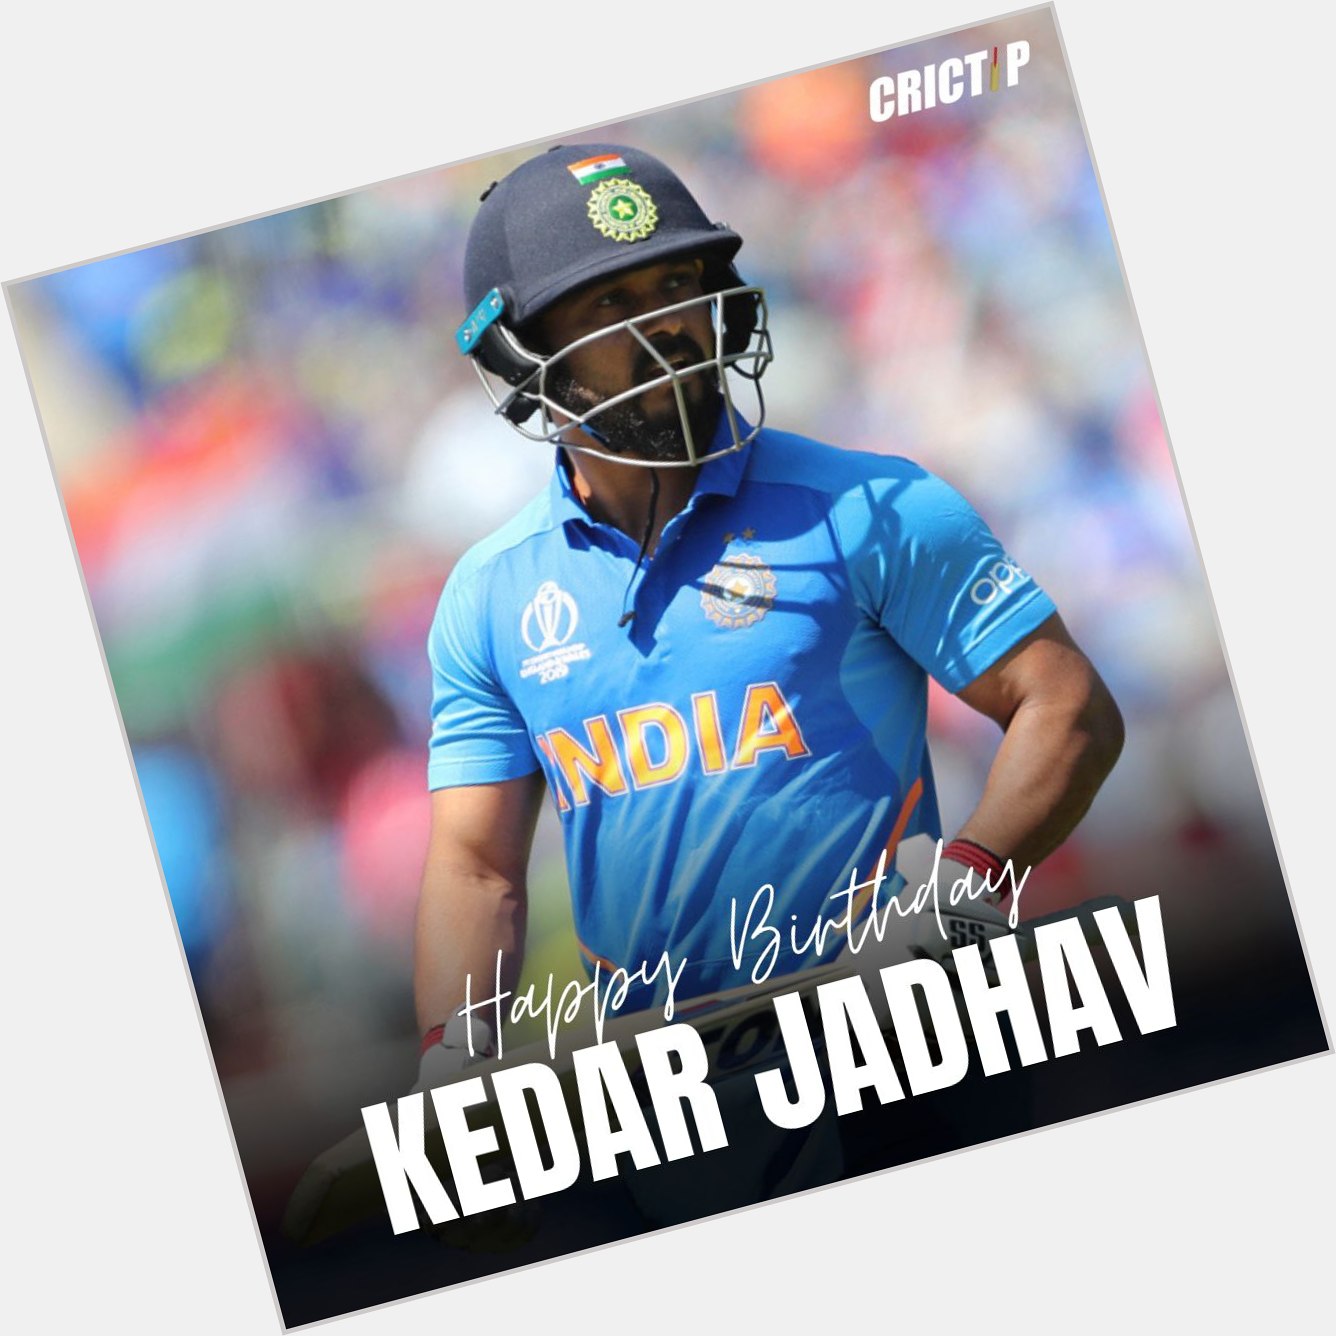   Happy Birthday Kedar Jadhav! 